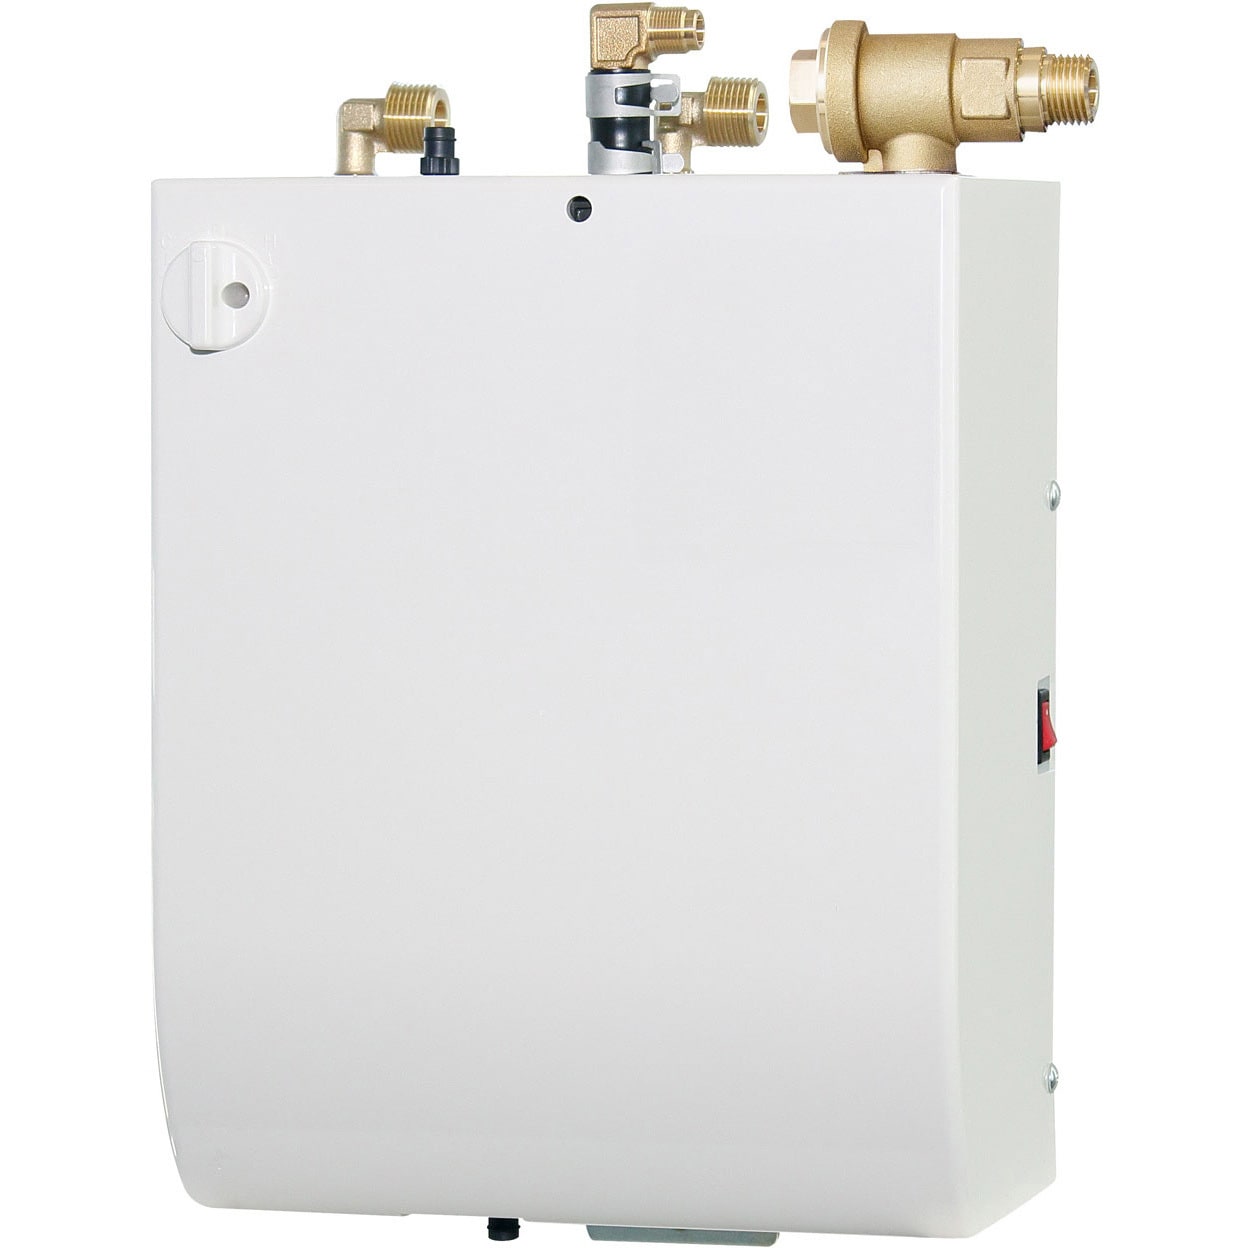 ESW03ATX106D0 壁掛貯湯型 小型電気温水器(先止式3リットル)ESW03 